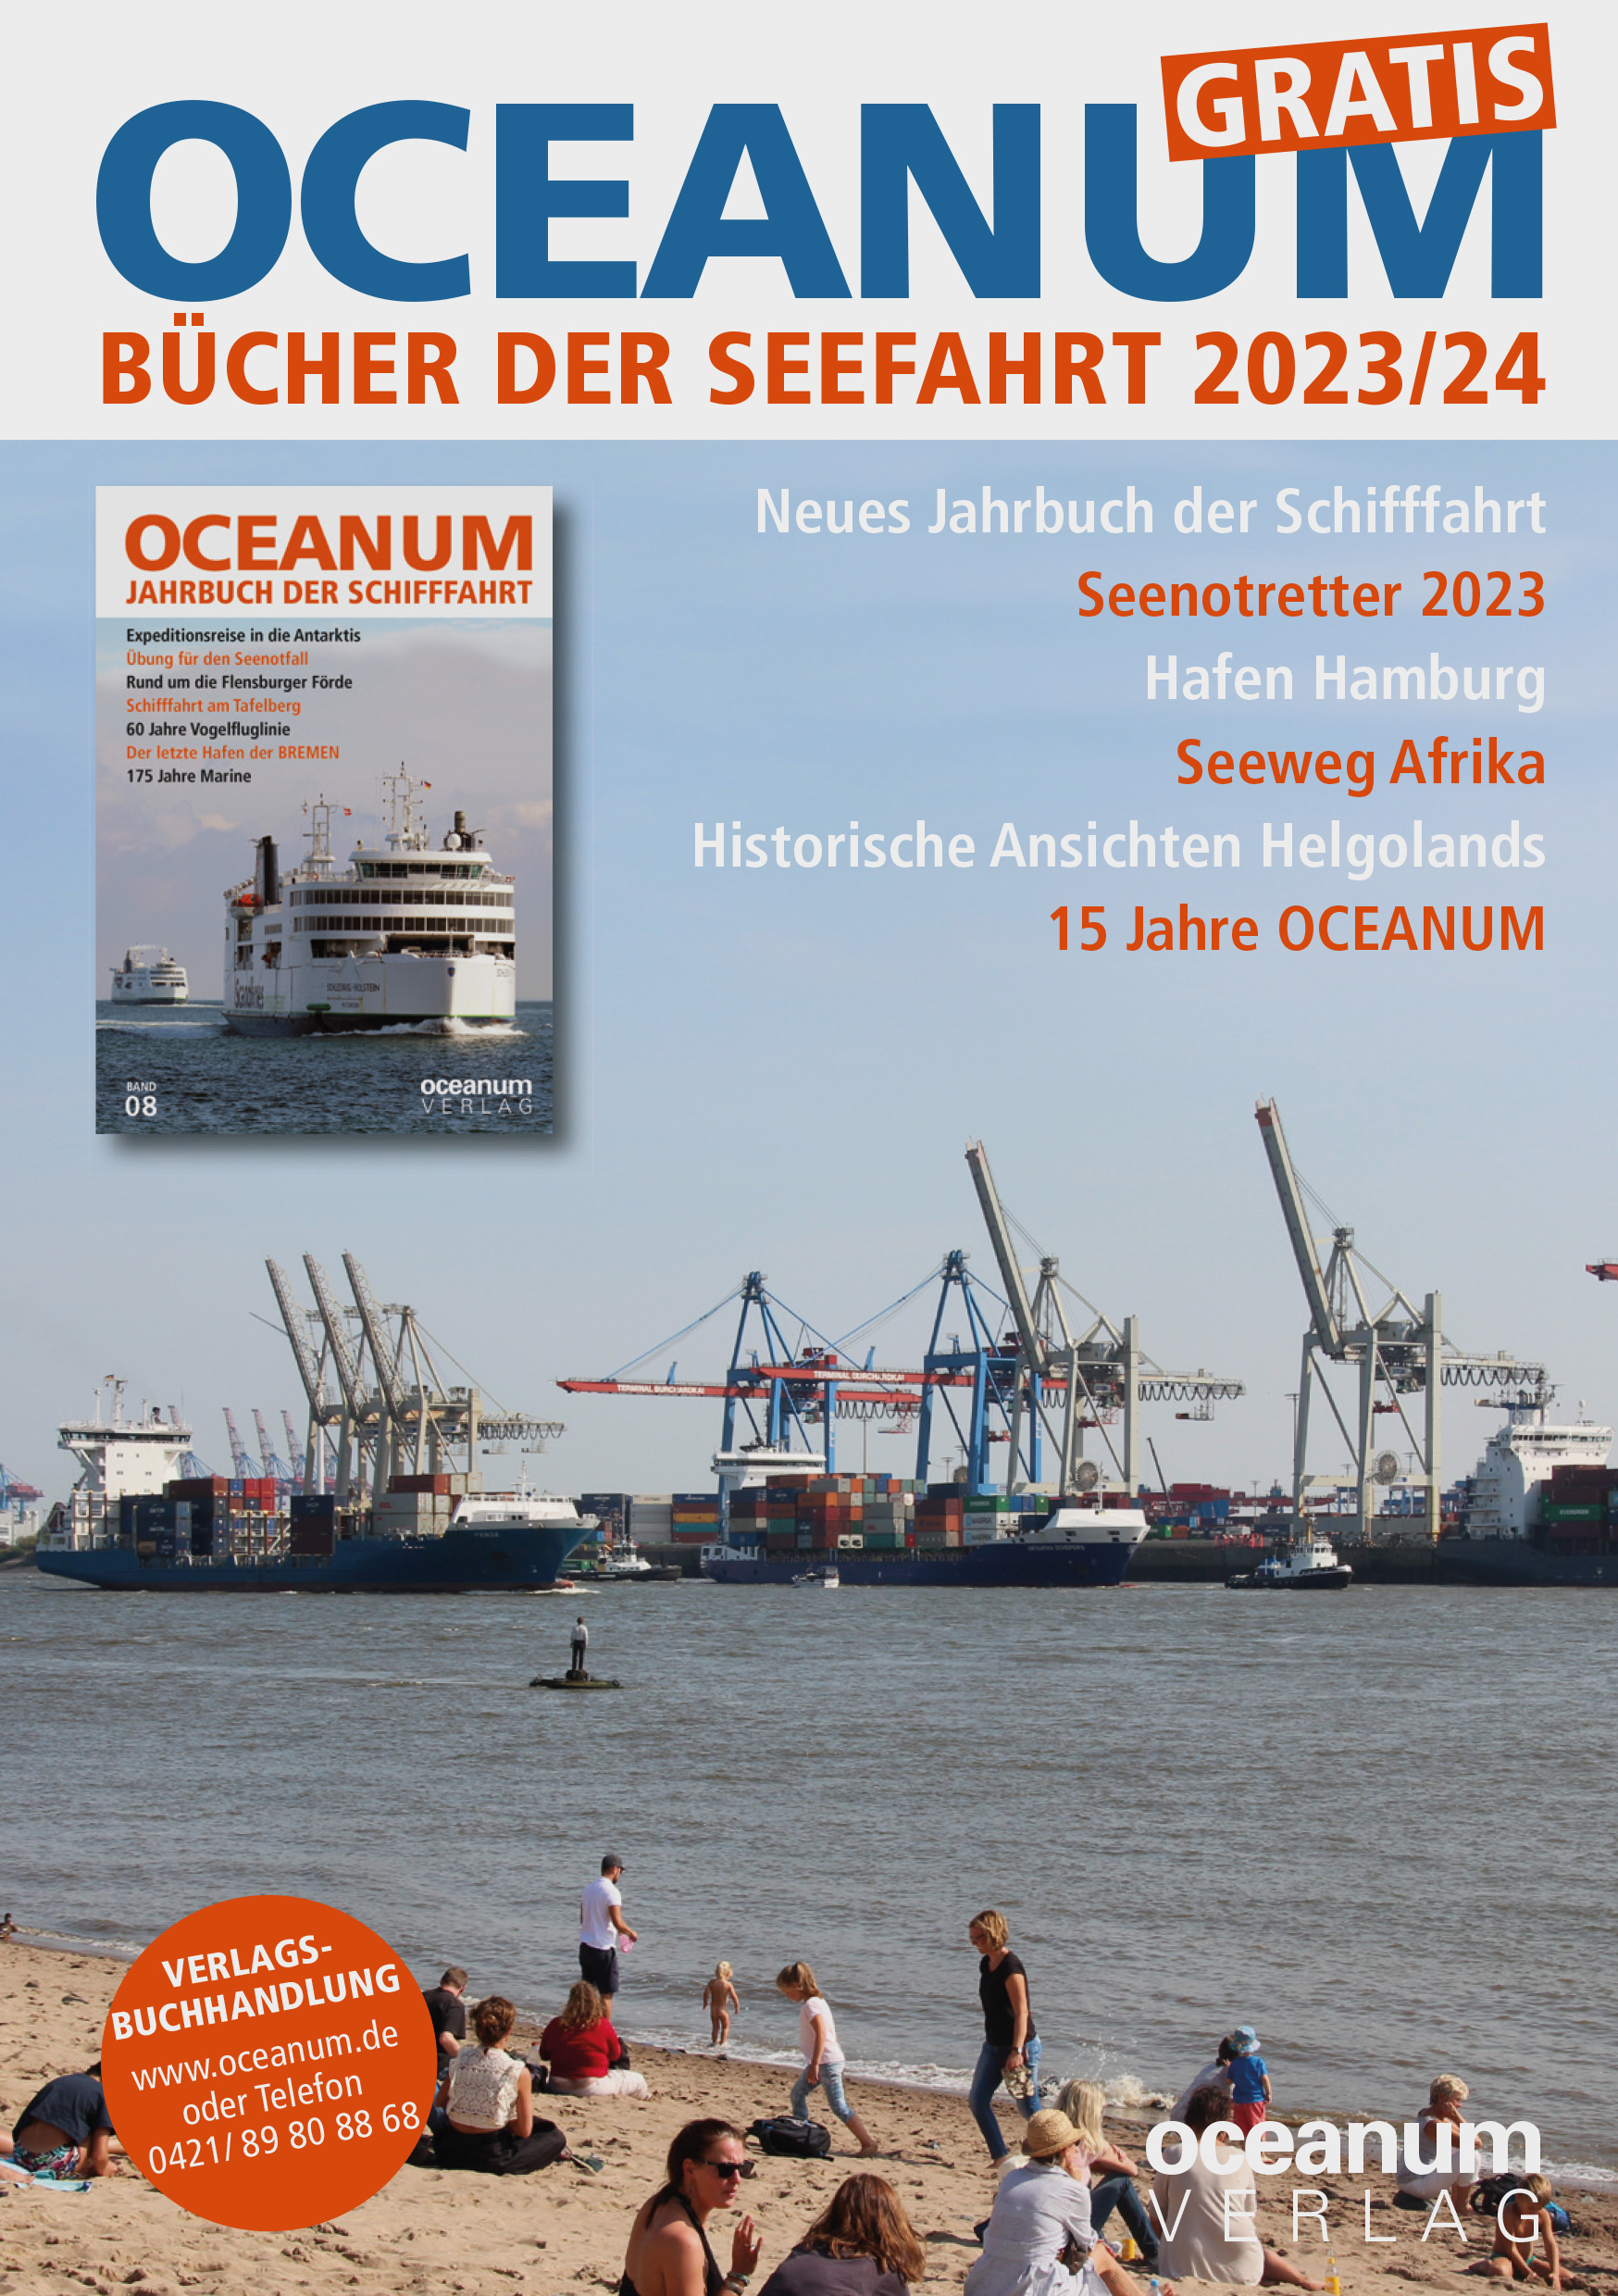 OCEANUM_Programm_2023-2024